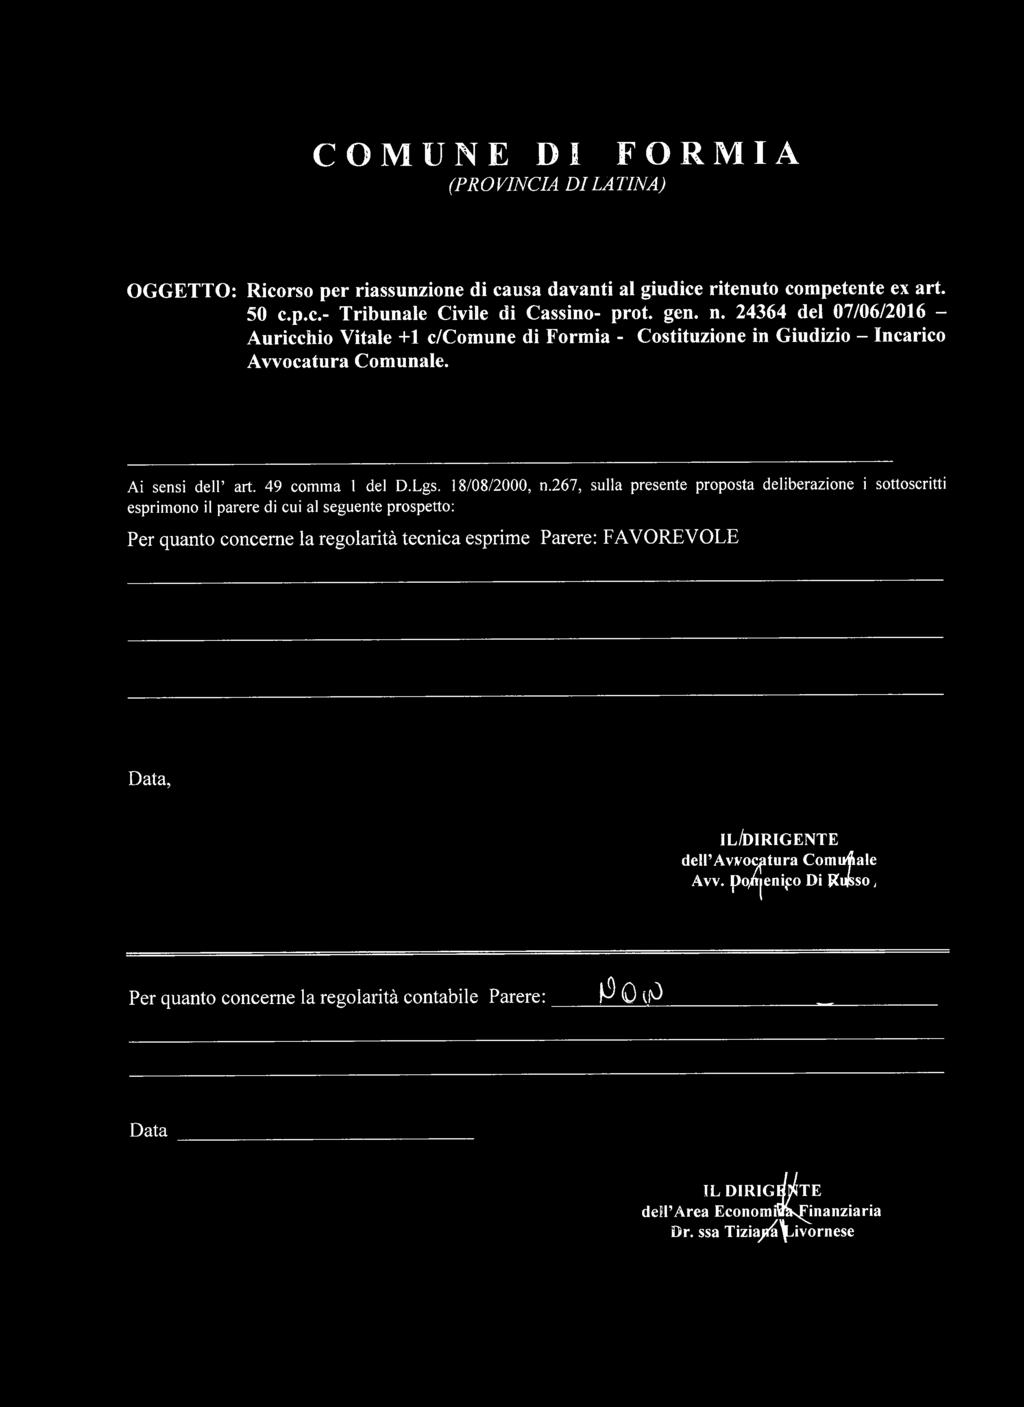 24364 del 07/06/2016 - Auricchio Vitale +1 c/comune di Formia - Costituzione in Giudizio - Incarico Avvocatura Comunale.